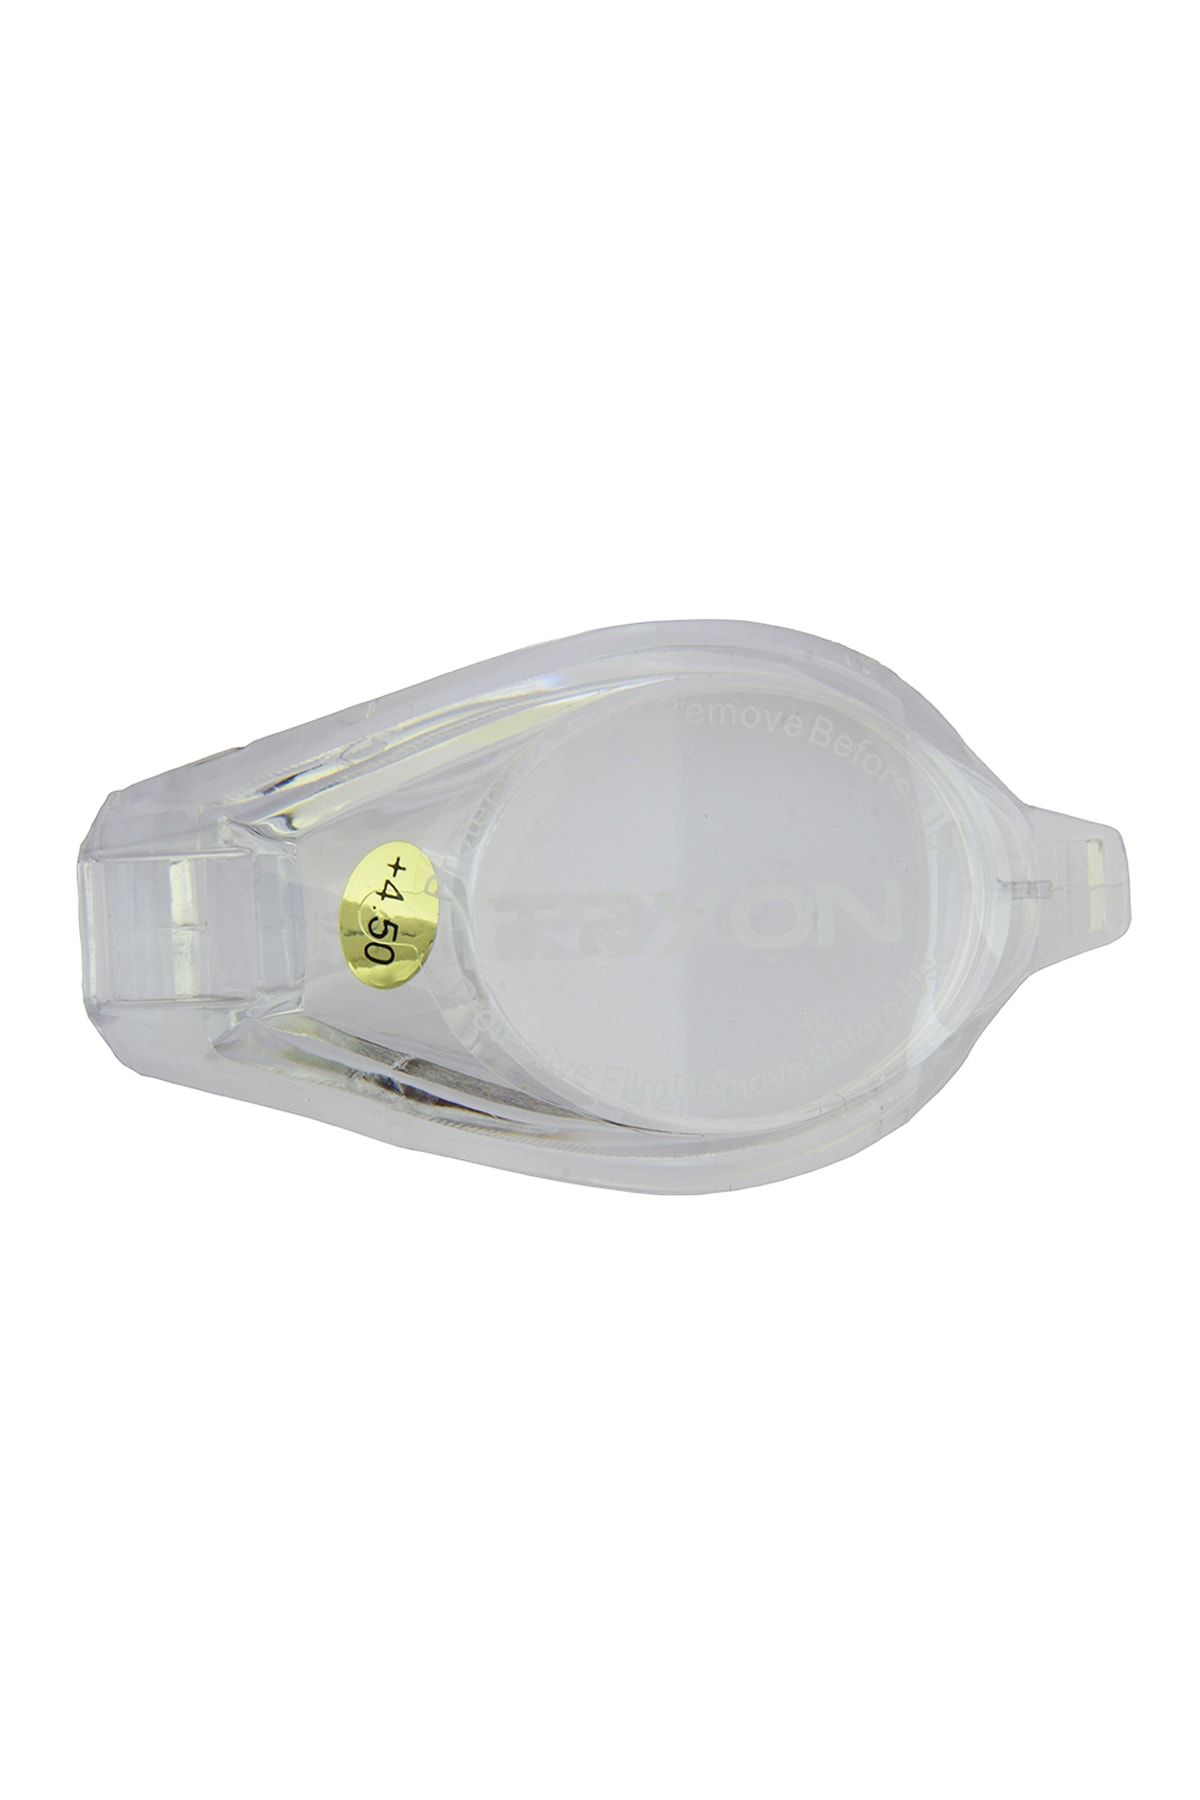 TRYON Unisex Bone & Deniz Gözlüğü - Tryon  Değiştirilebilir Numaralı Yüzücü Gözlüğü Camı - SGL-100